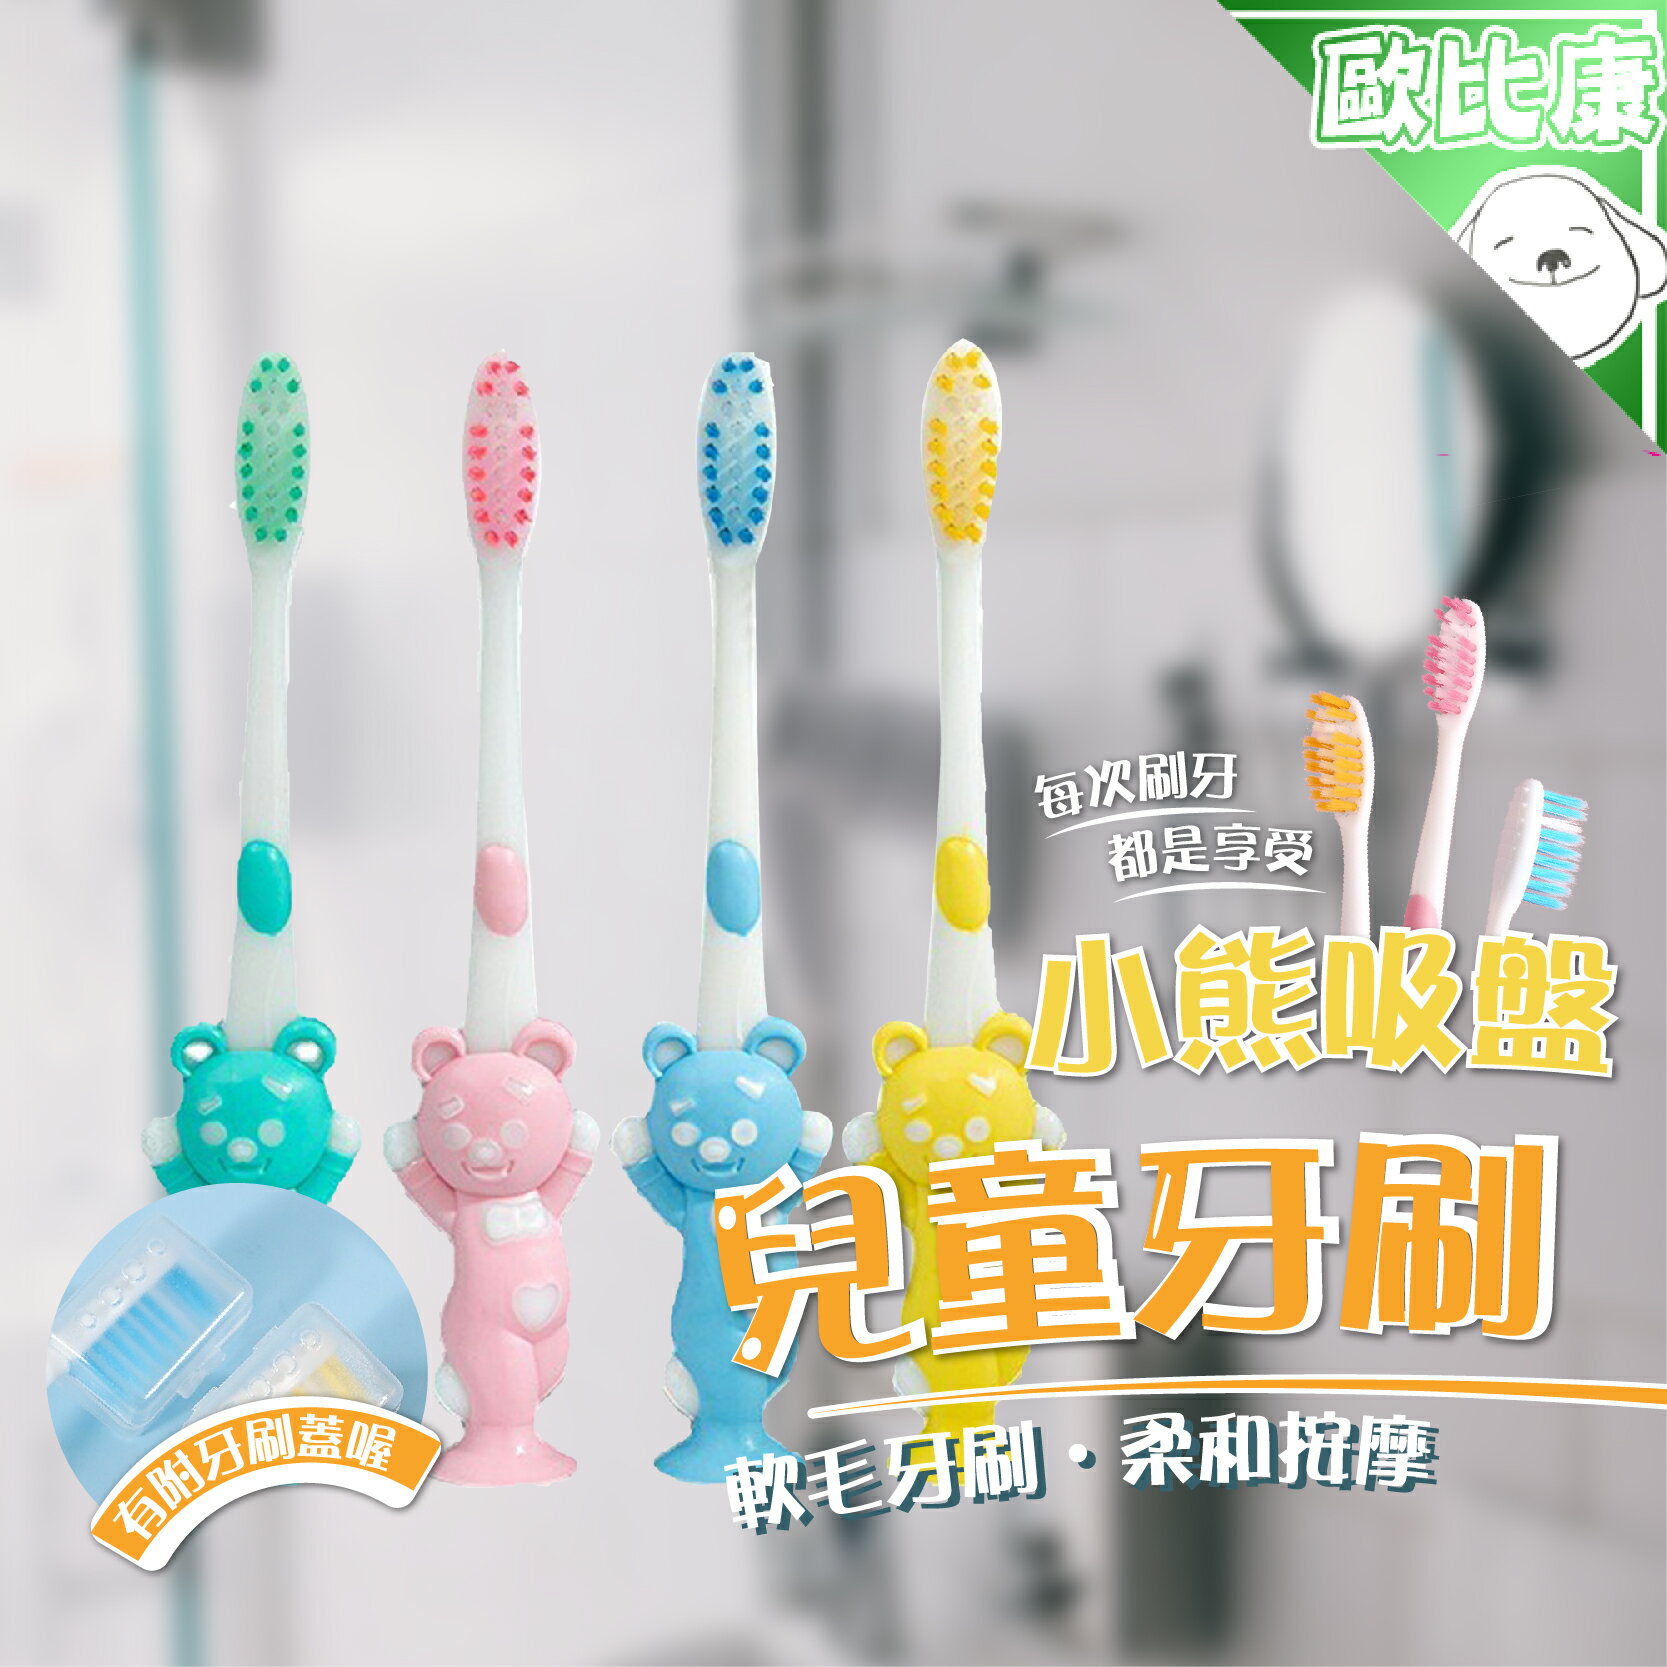 【歐比康】小熊吸盤兒童牙刷 4入裝吸盤造型牙刷 造型牙刷 兒童牙刷 小熊牙刷動物牙刷 可站牙刷 軟毛刷頭牙刷